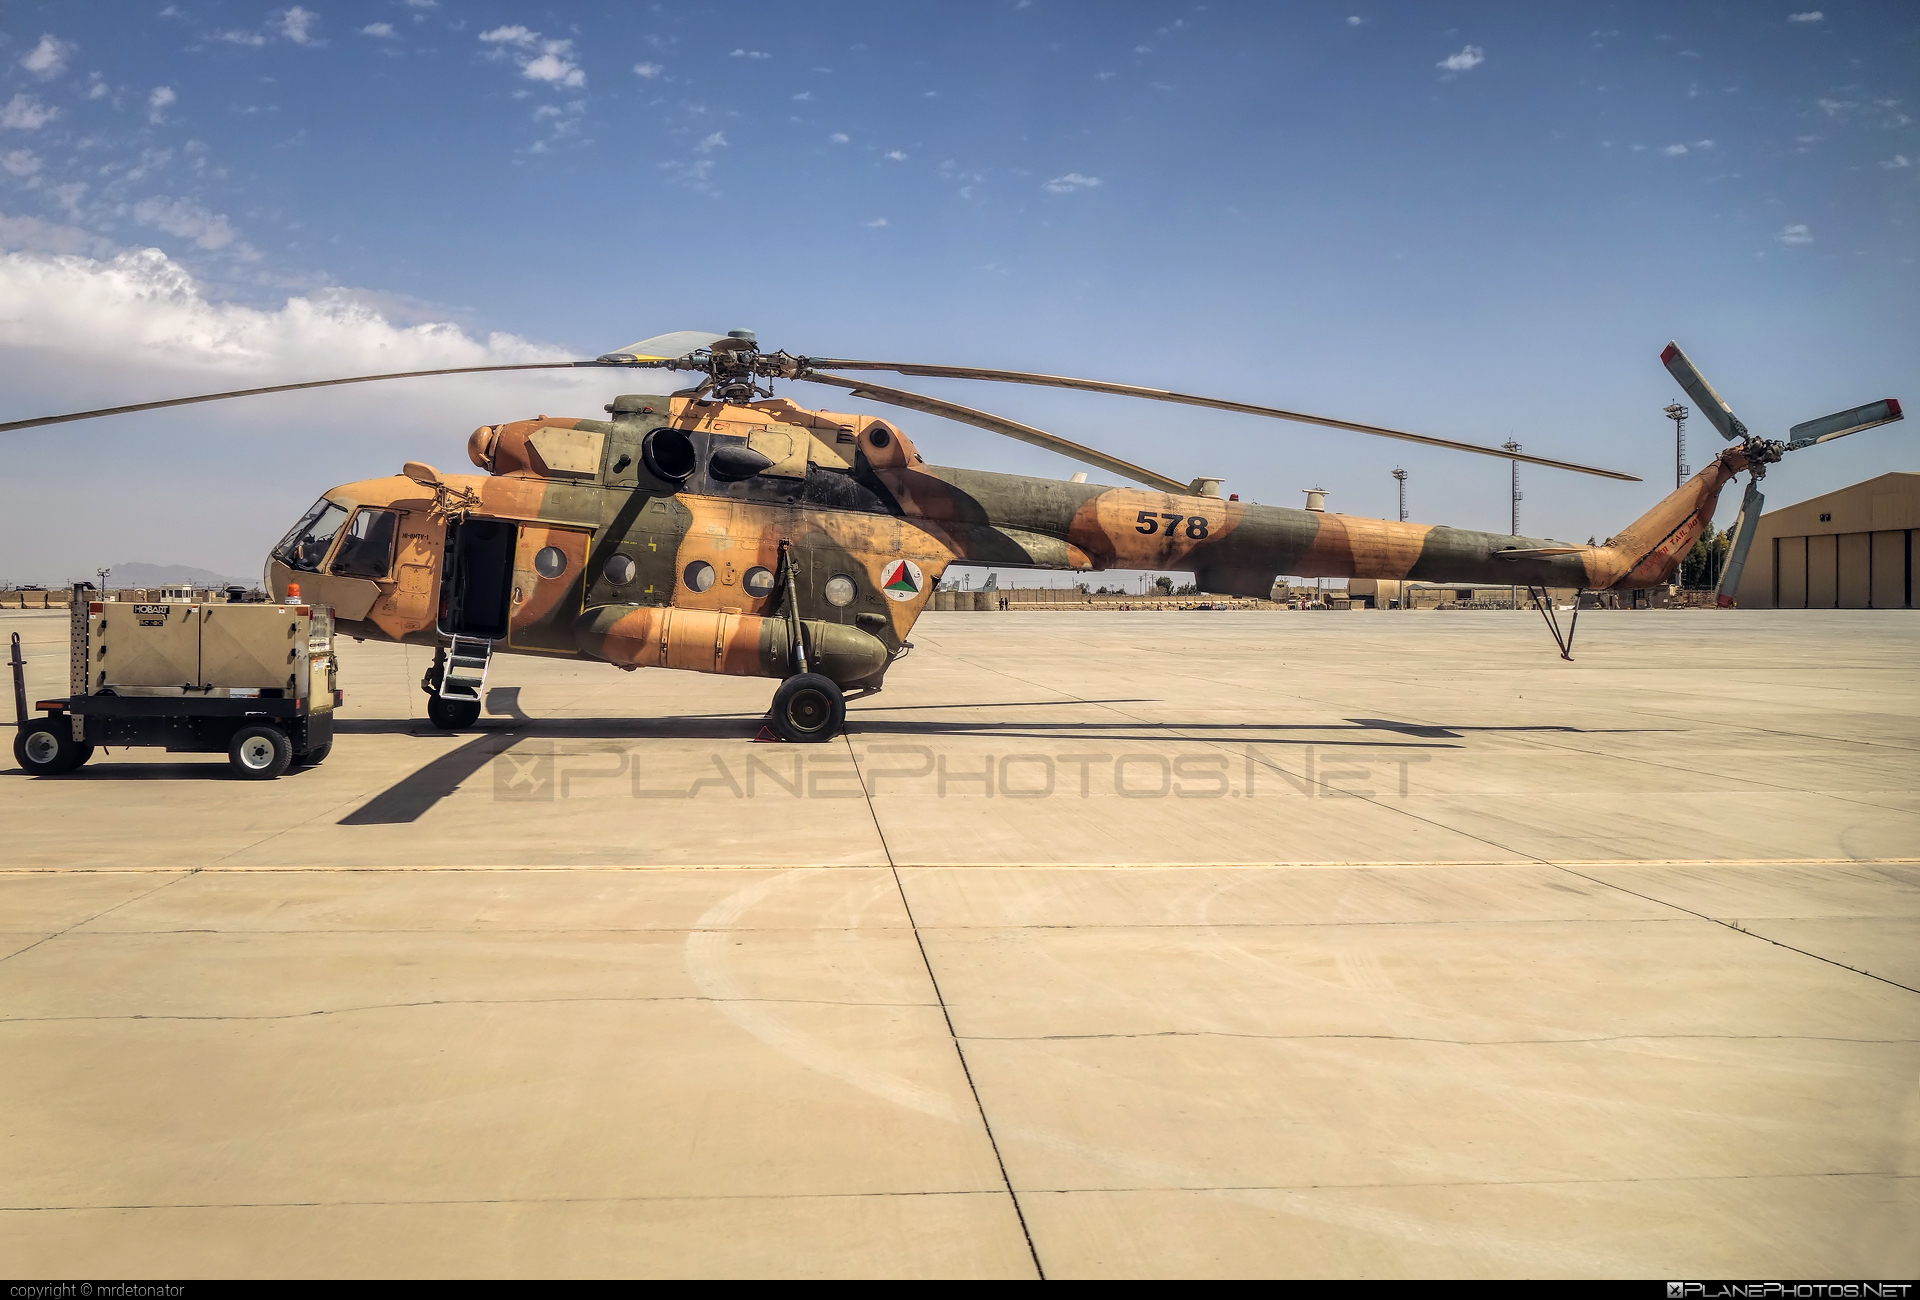 Mil Mi-8MTV-1 - 578 operated by Afghan Air Force #afghanairforce #mi8 #mi8mtv1 #mil #milhelicopters #milmi8 #milmi8mtv1